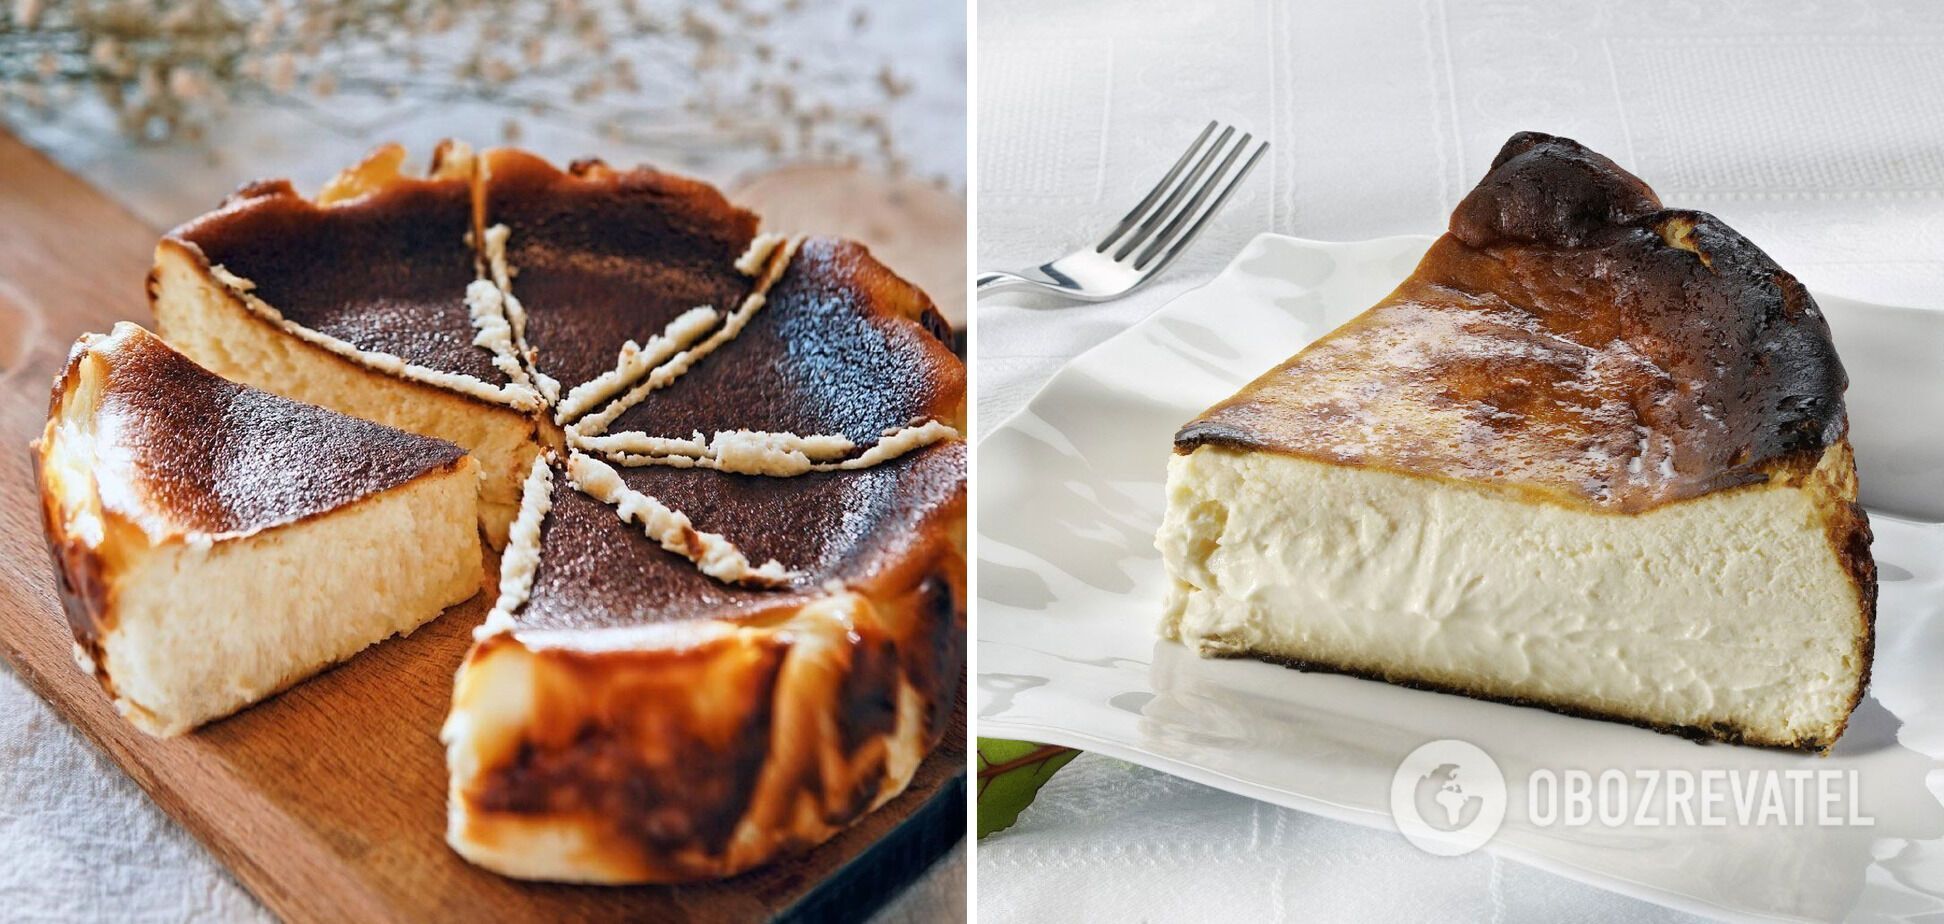 Delicious Basque cheesecake